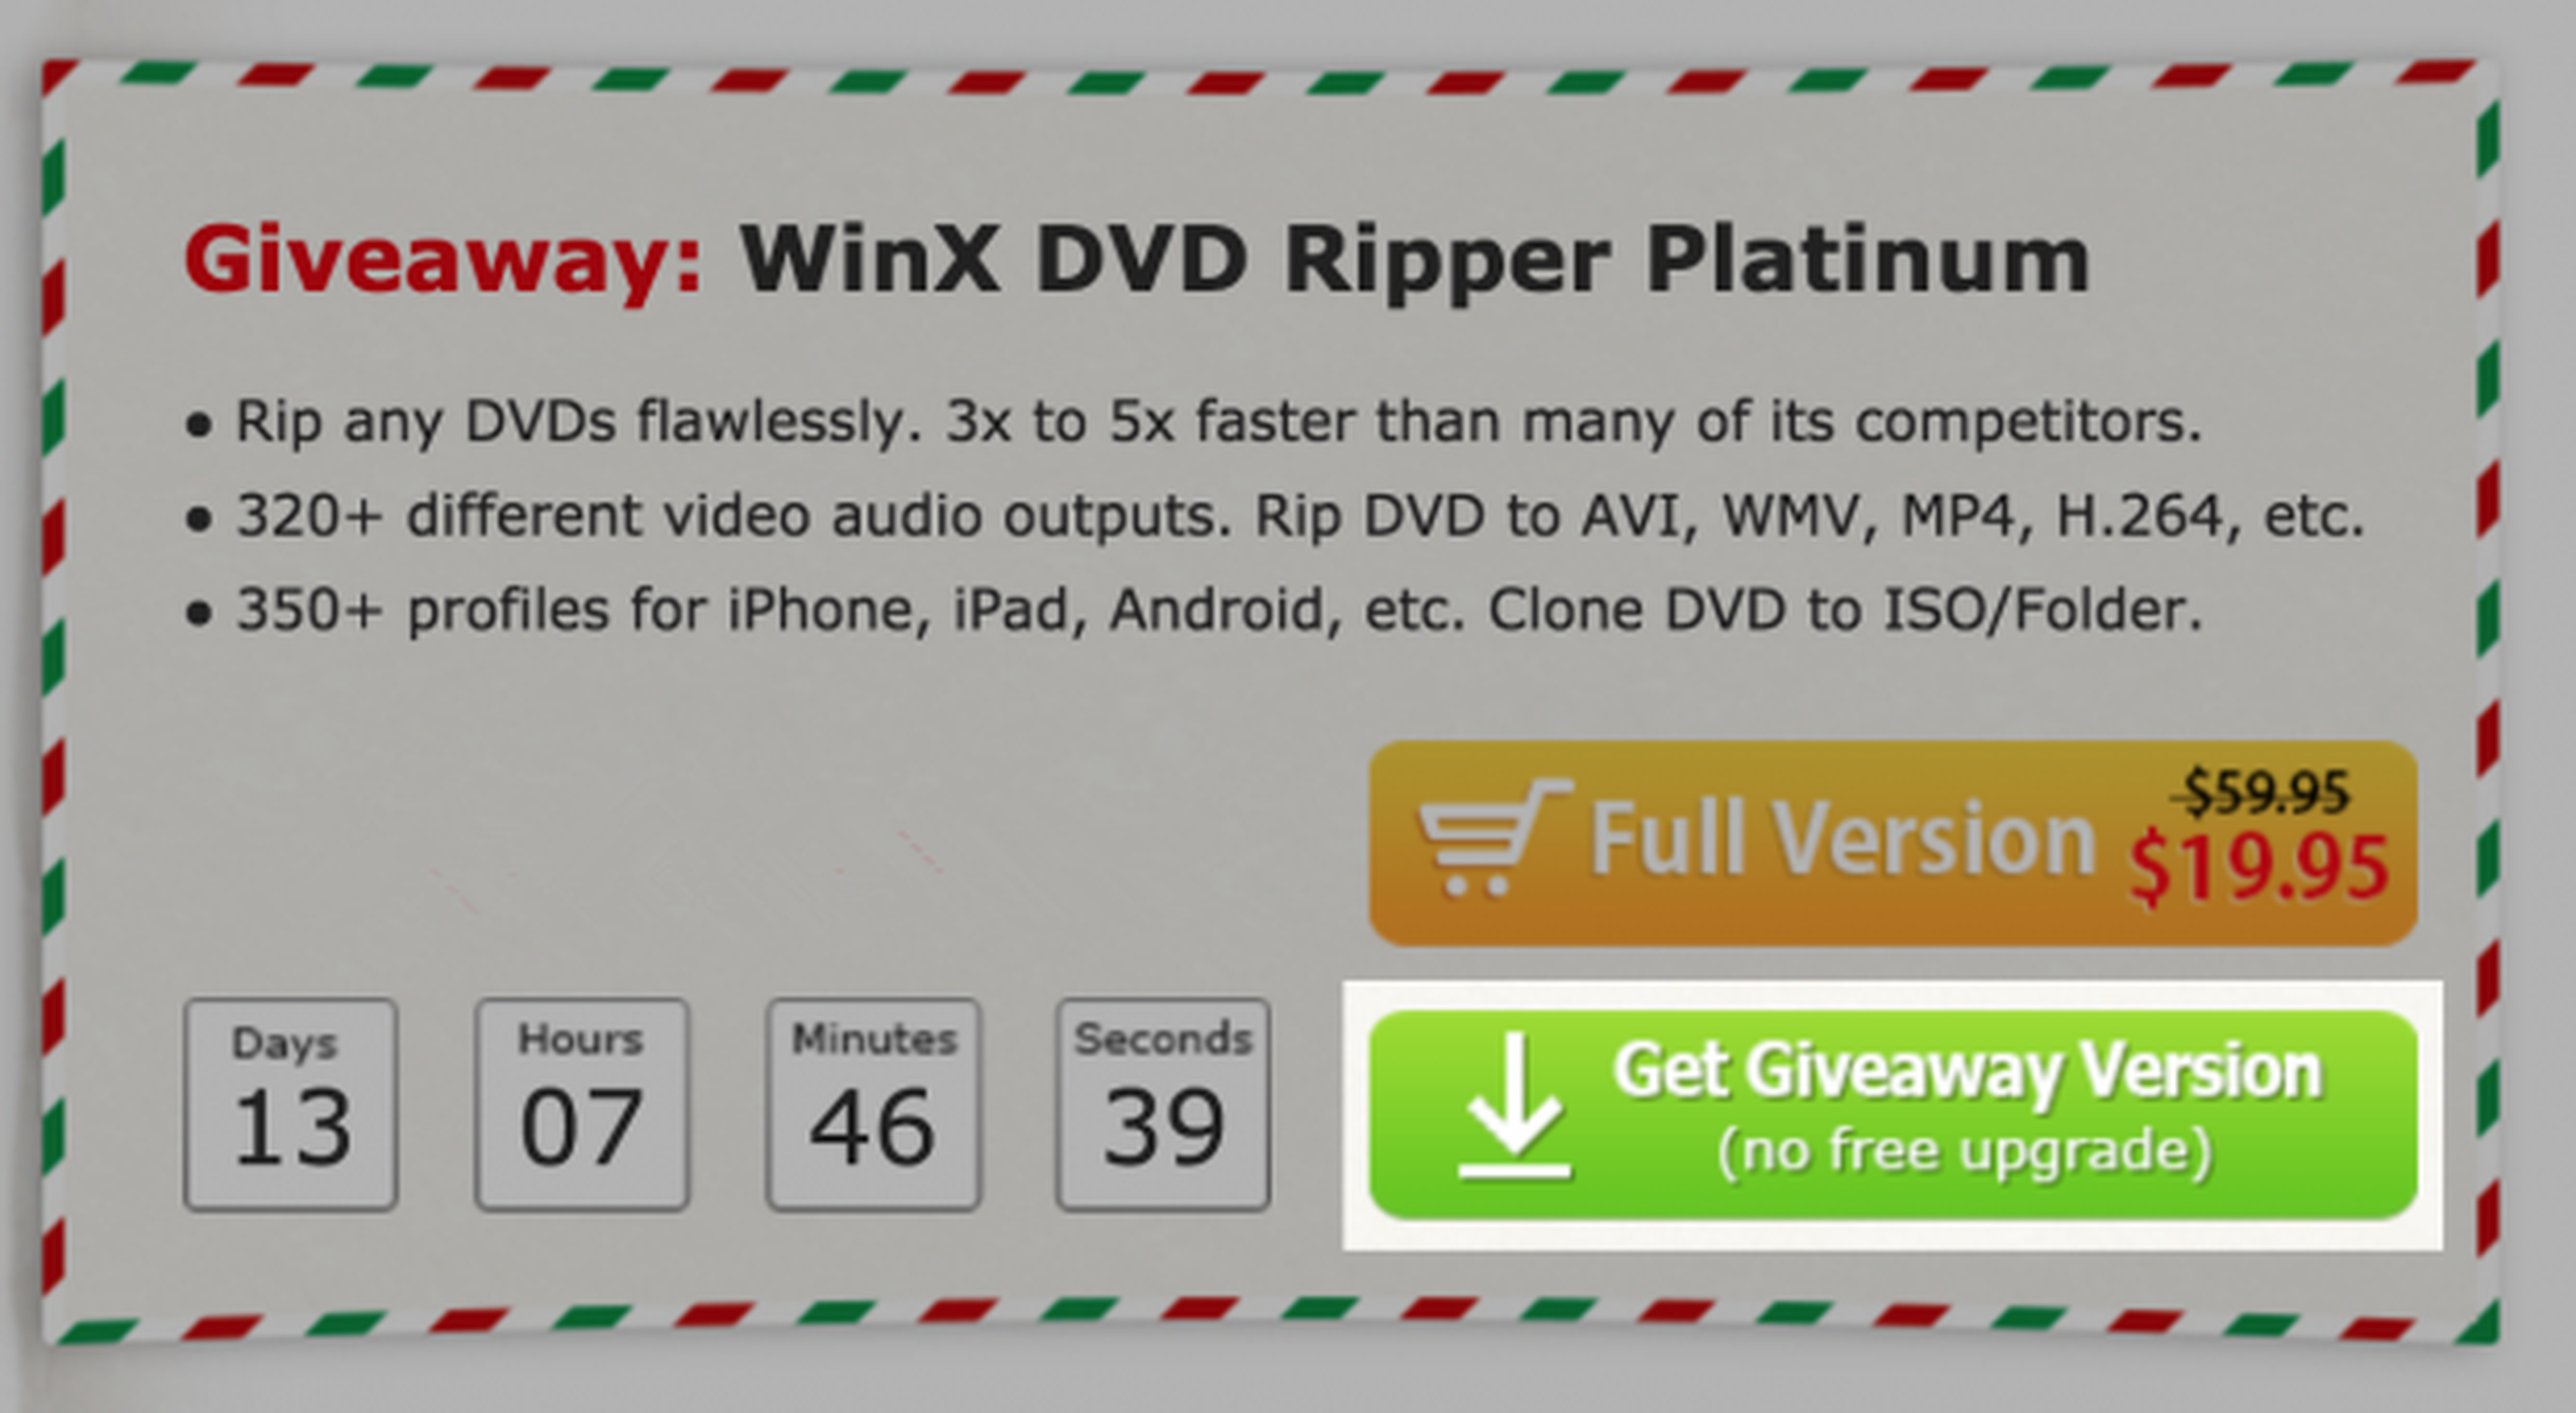 Oferta limitada: WinX DVD Ripper Platinum, convierte tus DVDs a MP4, AVI, ISO gratis